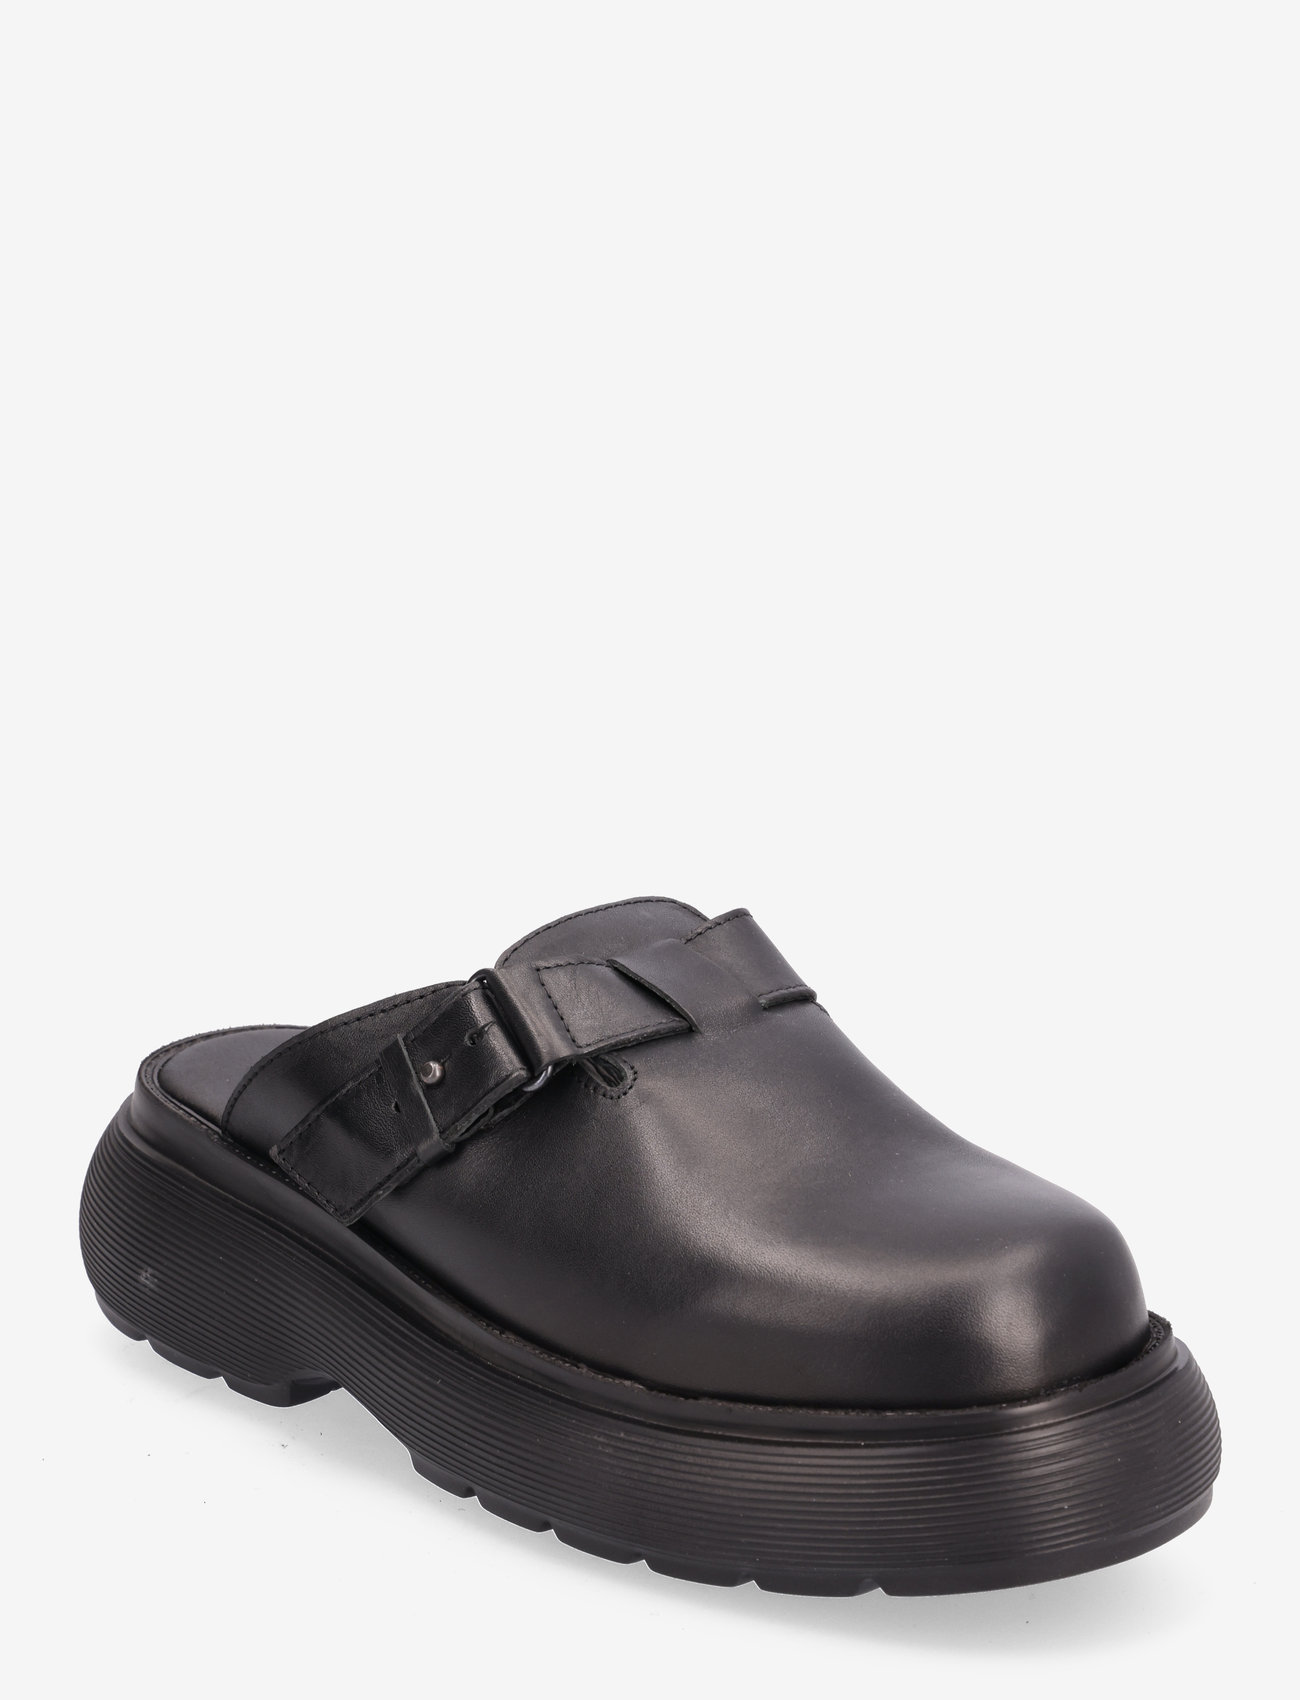 Garment Project - Cloud Clog - Black Leather - buty z odkrytą piętą na płaskim obcasie - black - 0